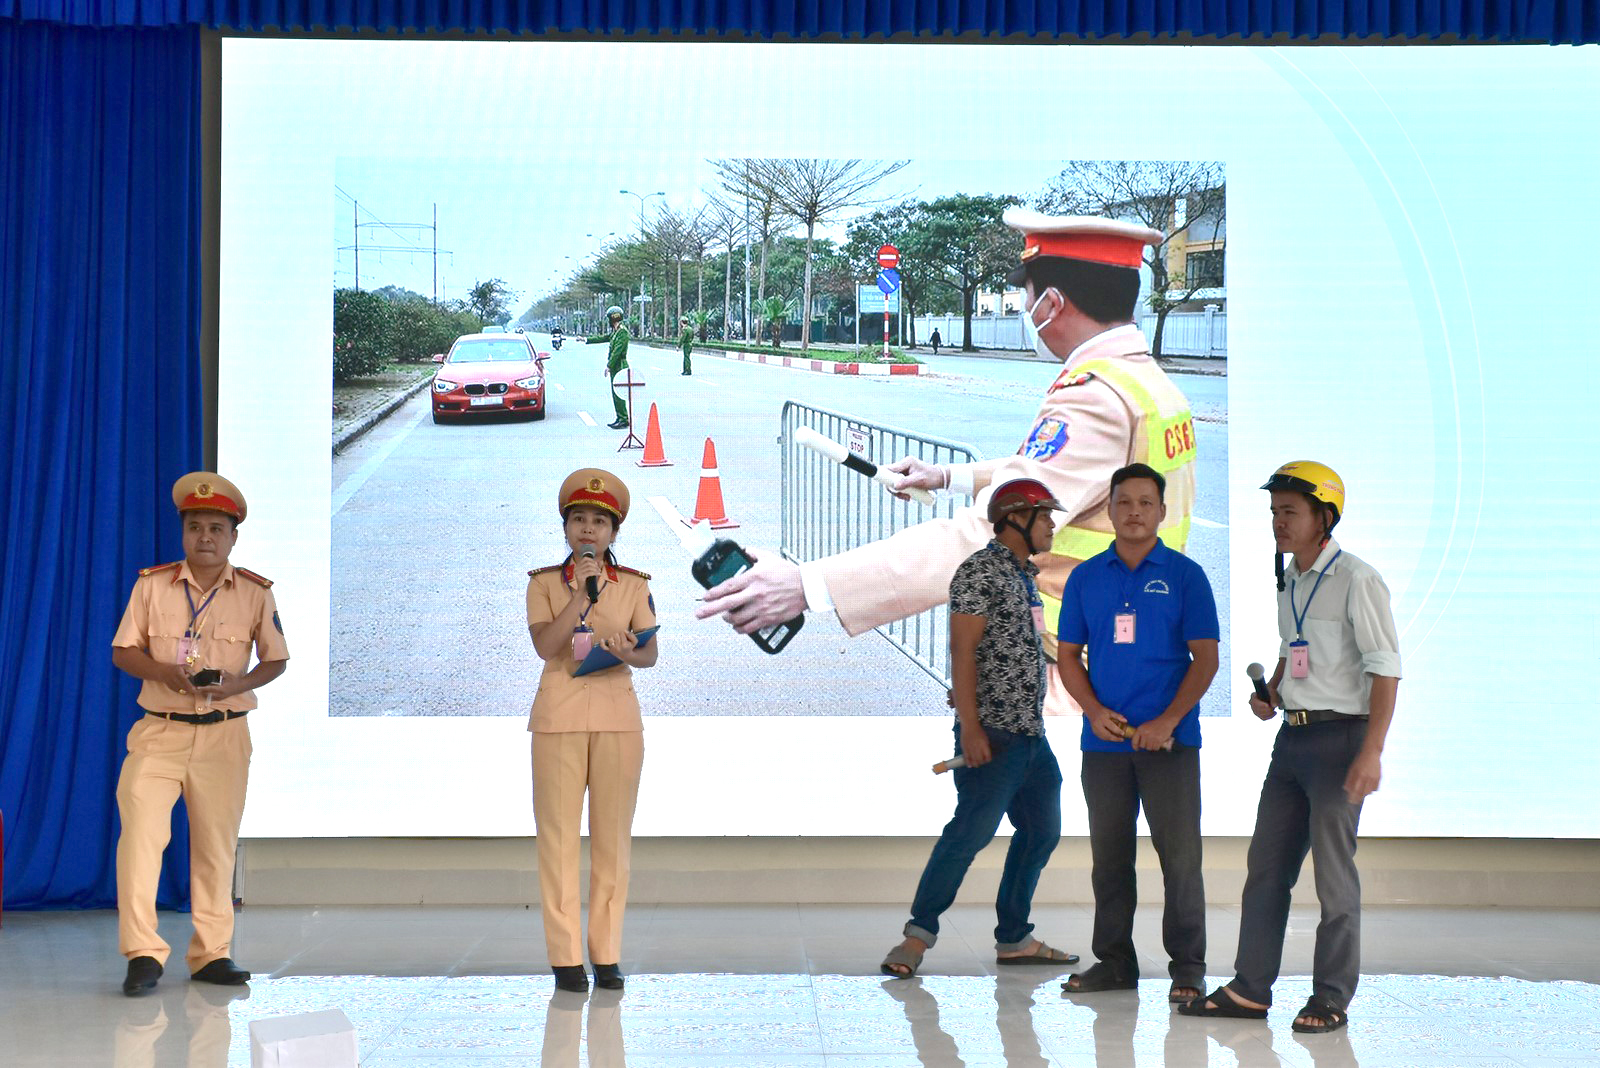 Huyện Châu Thành tổ chức Hội thi “Thanh niên với an toàn giao thông - Thượng tôn pháp luật để xây dựng văn hóa giao thông an toàn” năm 2023